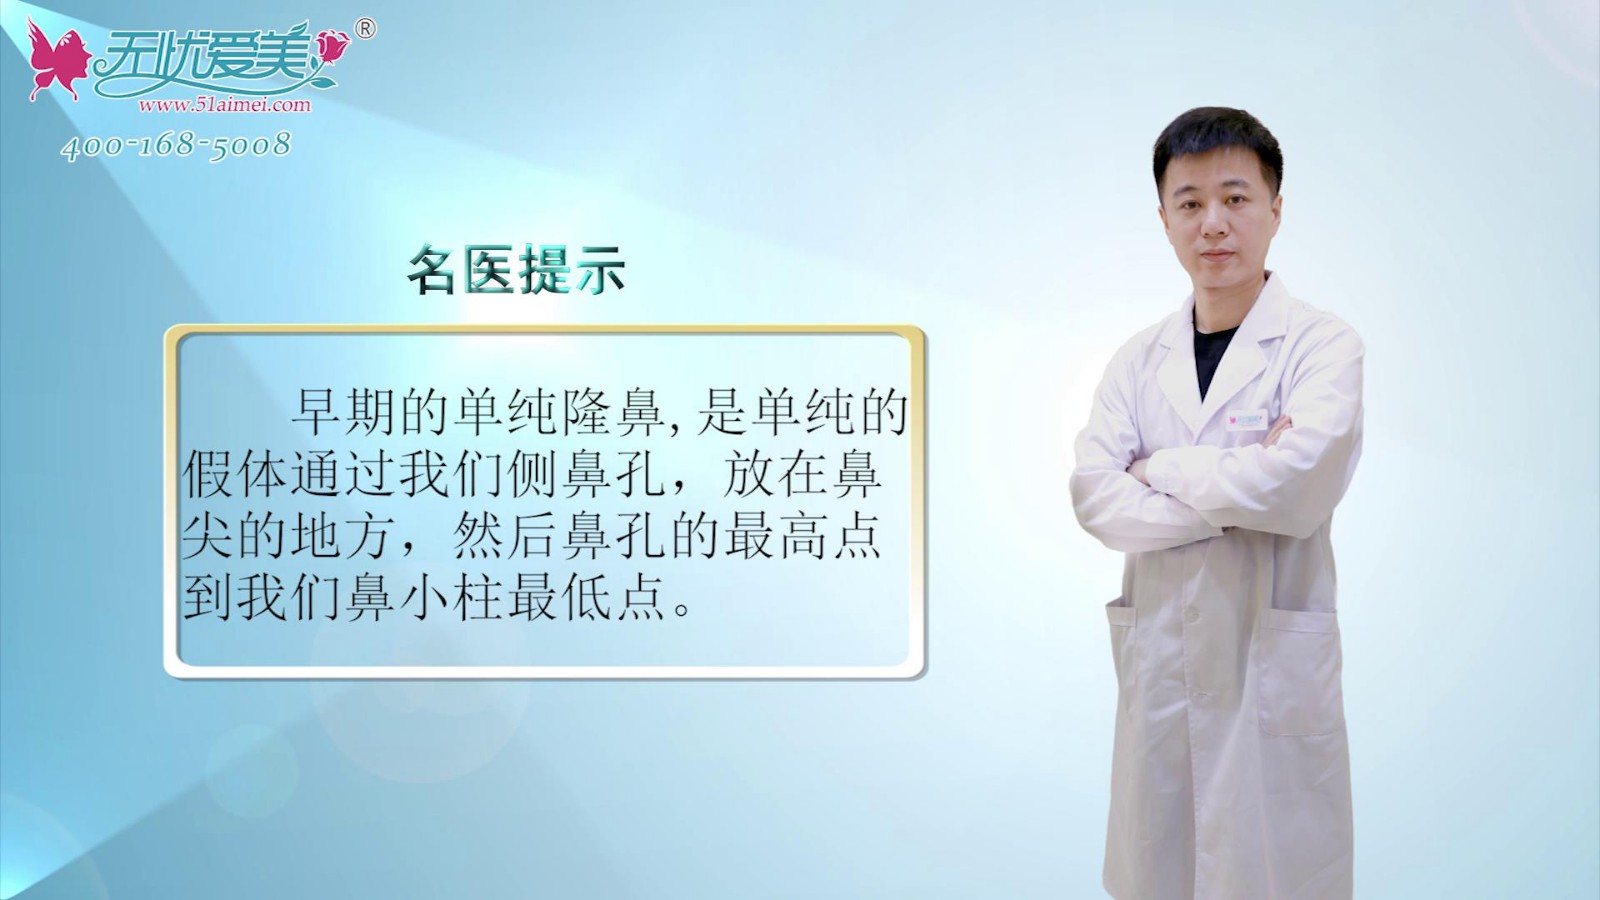 视频特邀南京鼻祖张哲医生解答鼻子修复可以分为几方面